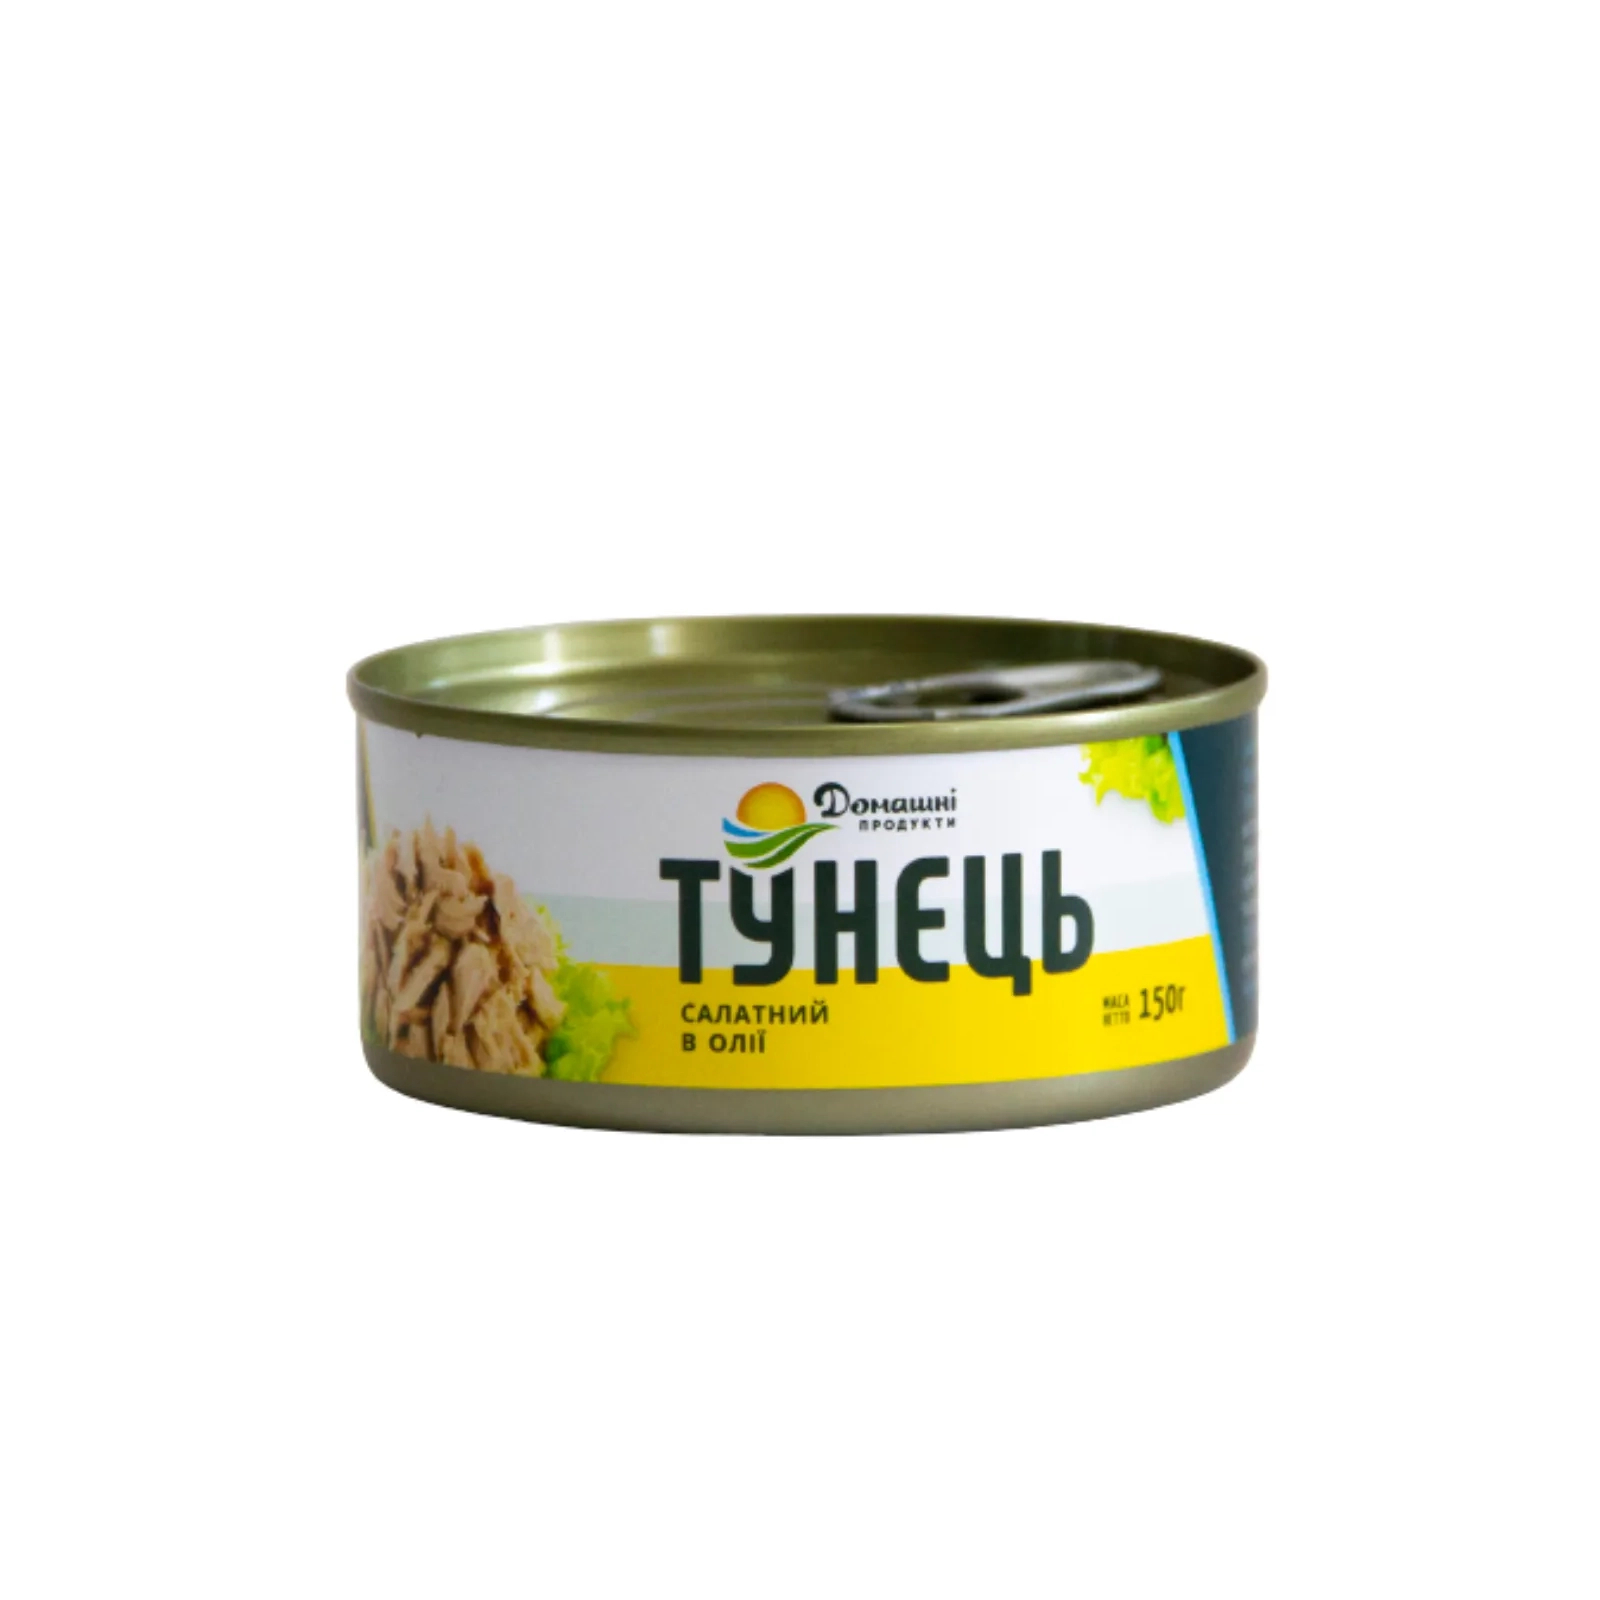 Рыбные консервы Домашні продукти Тунец салатный в масле 150 г (4820186120530)